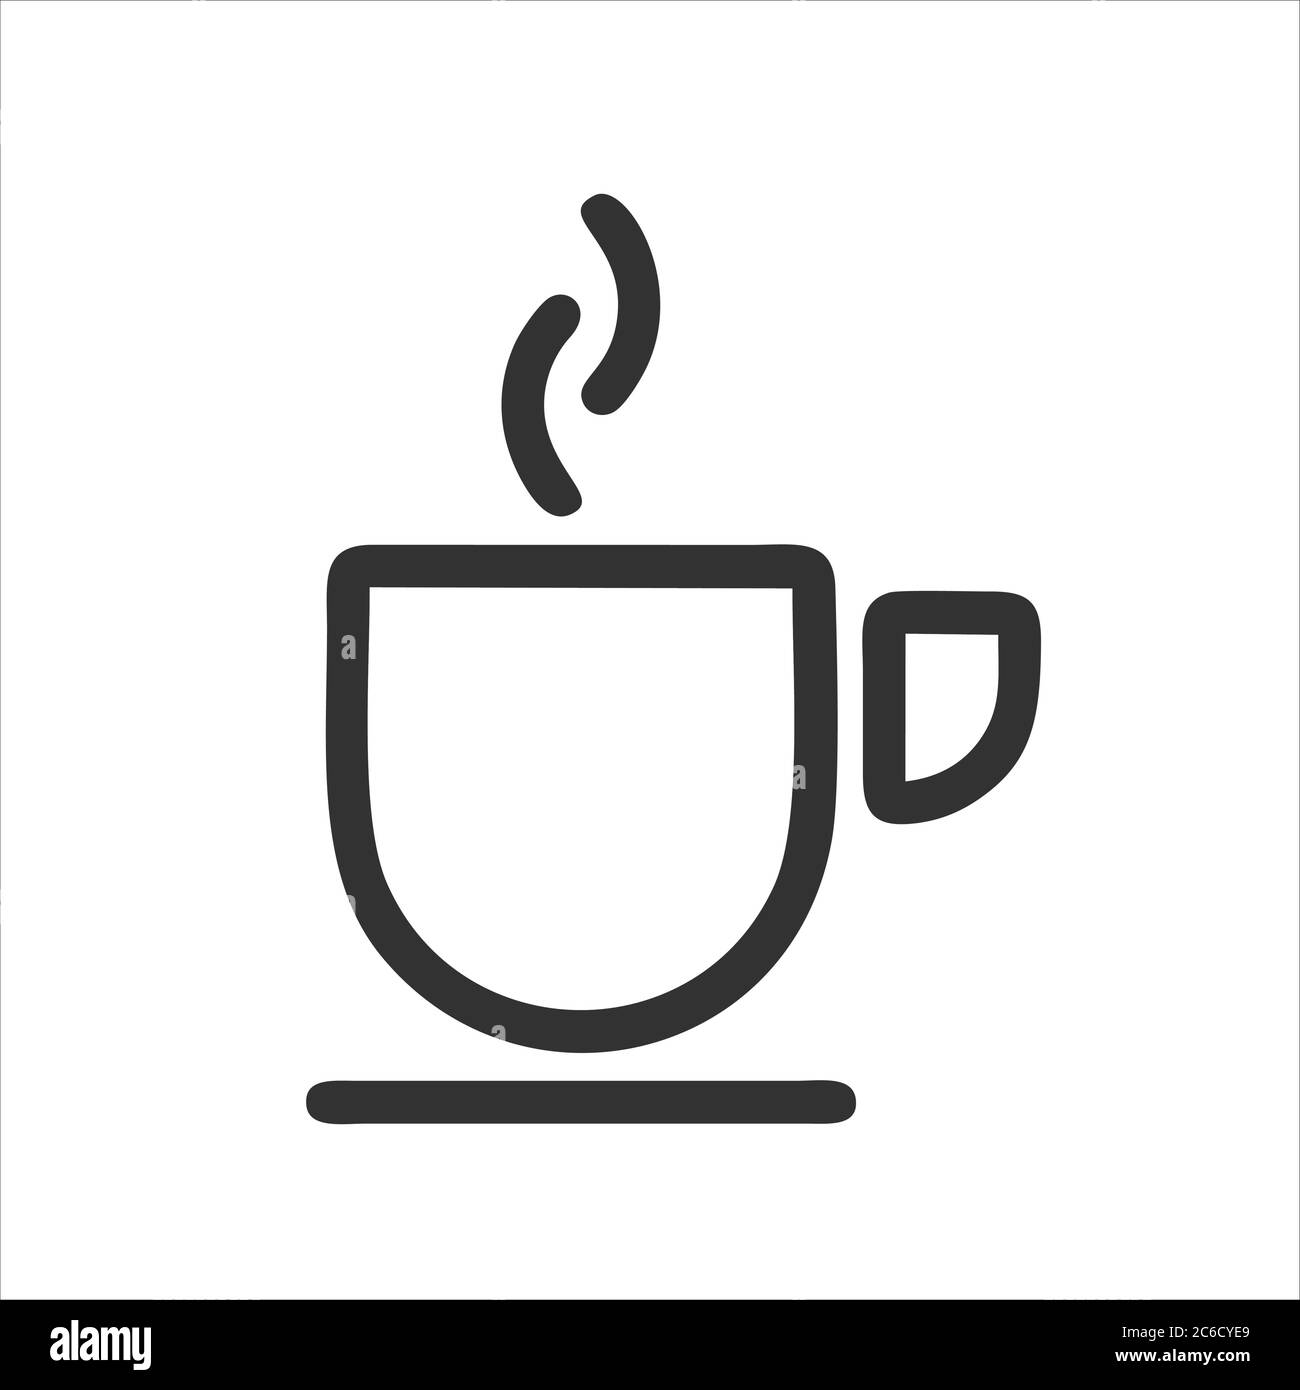 https://c8.alamy.com/compes/2c6cye9/icono-de-taza-de-cafe-aislado-sobre-fondo-blanco-de-la-coleccion-de-la-cafeteria-icono-de-taza-de-cafe-moderno-y-simbolo-de-taza-de-cafe-para-el-logo-web-app-iu-2c6cye9.jpg